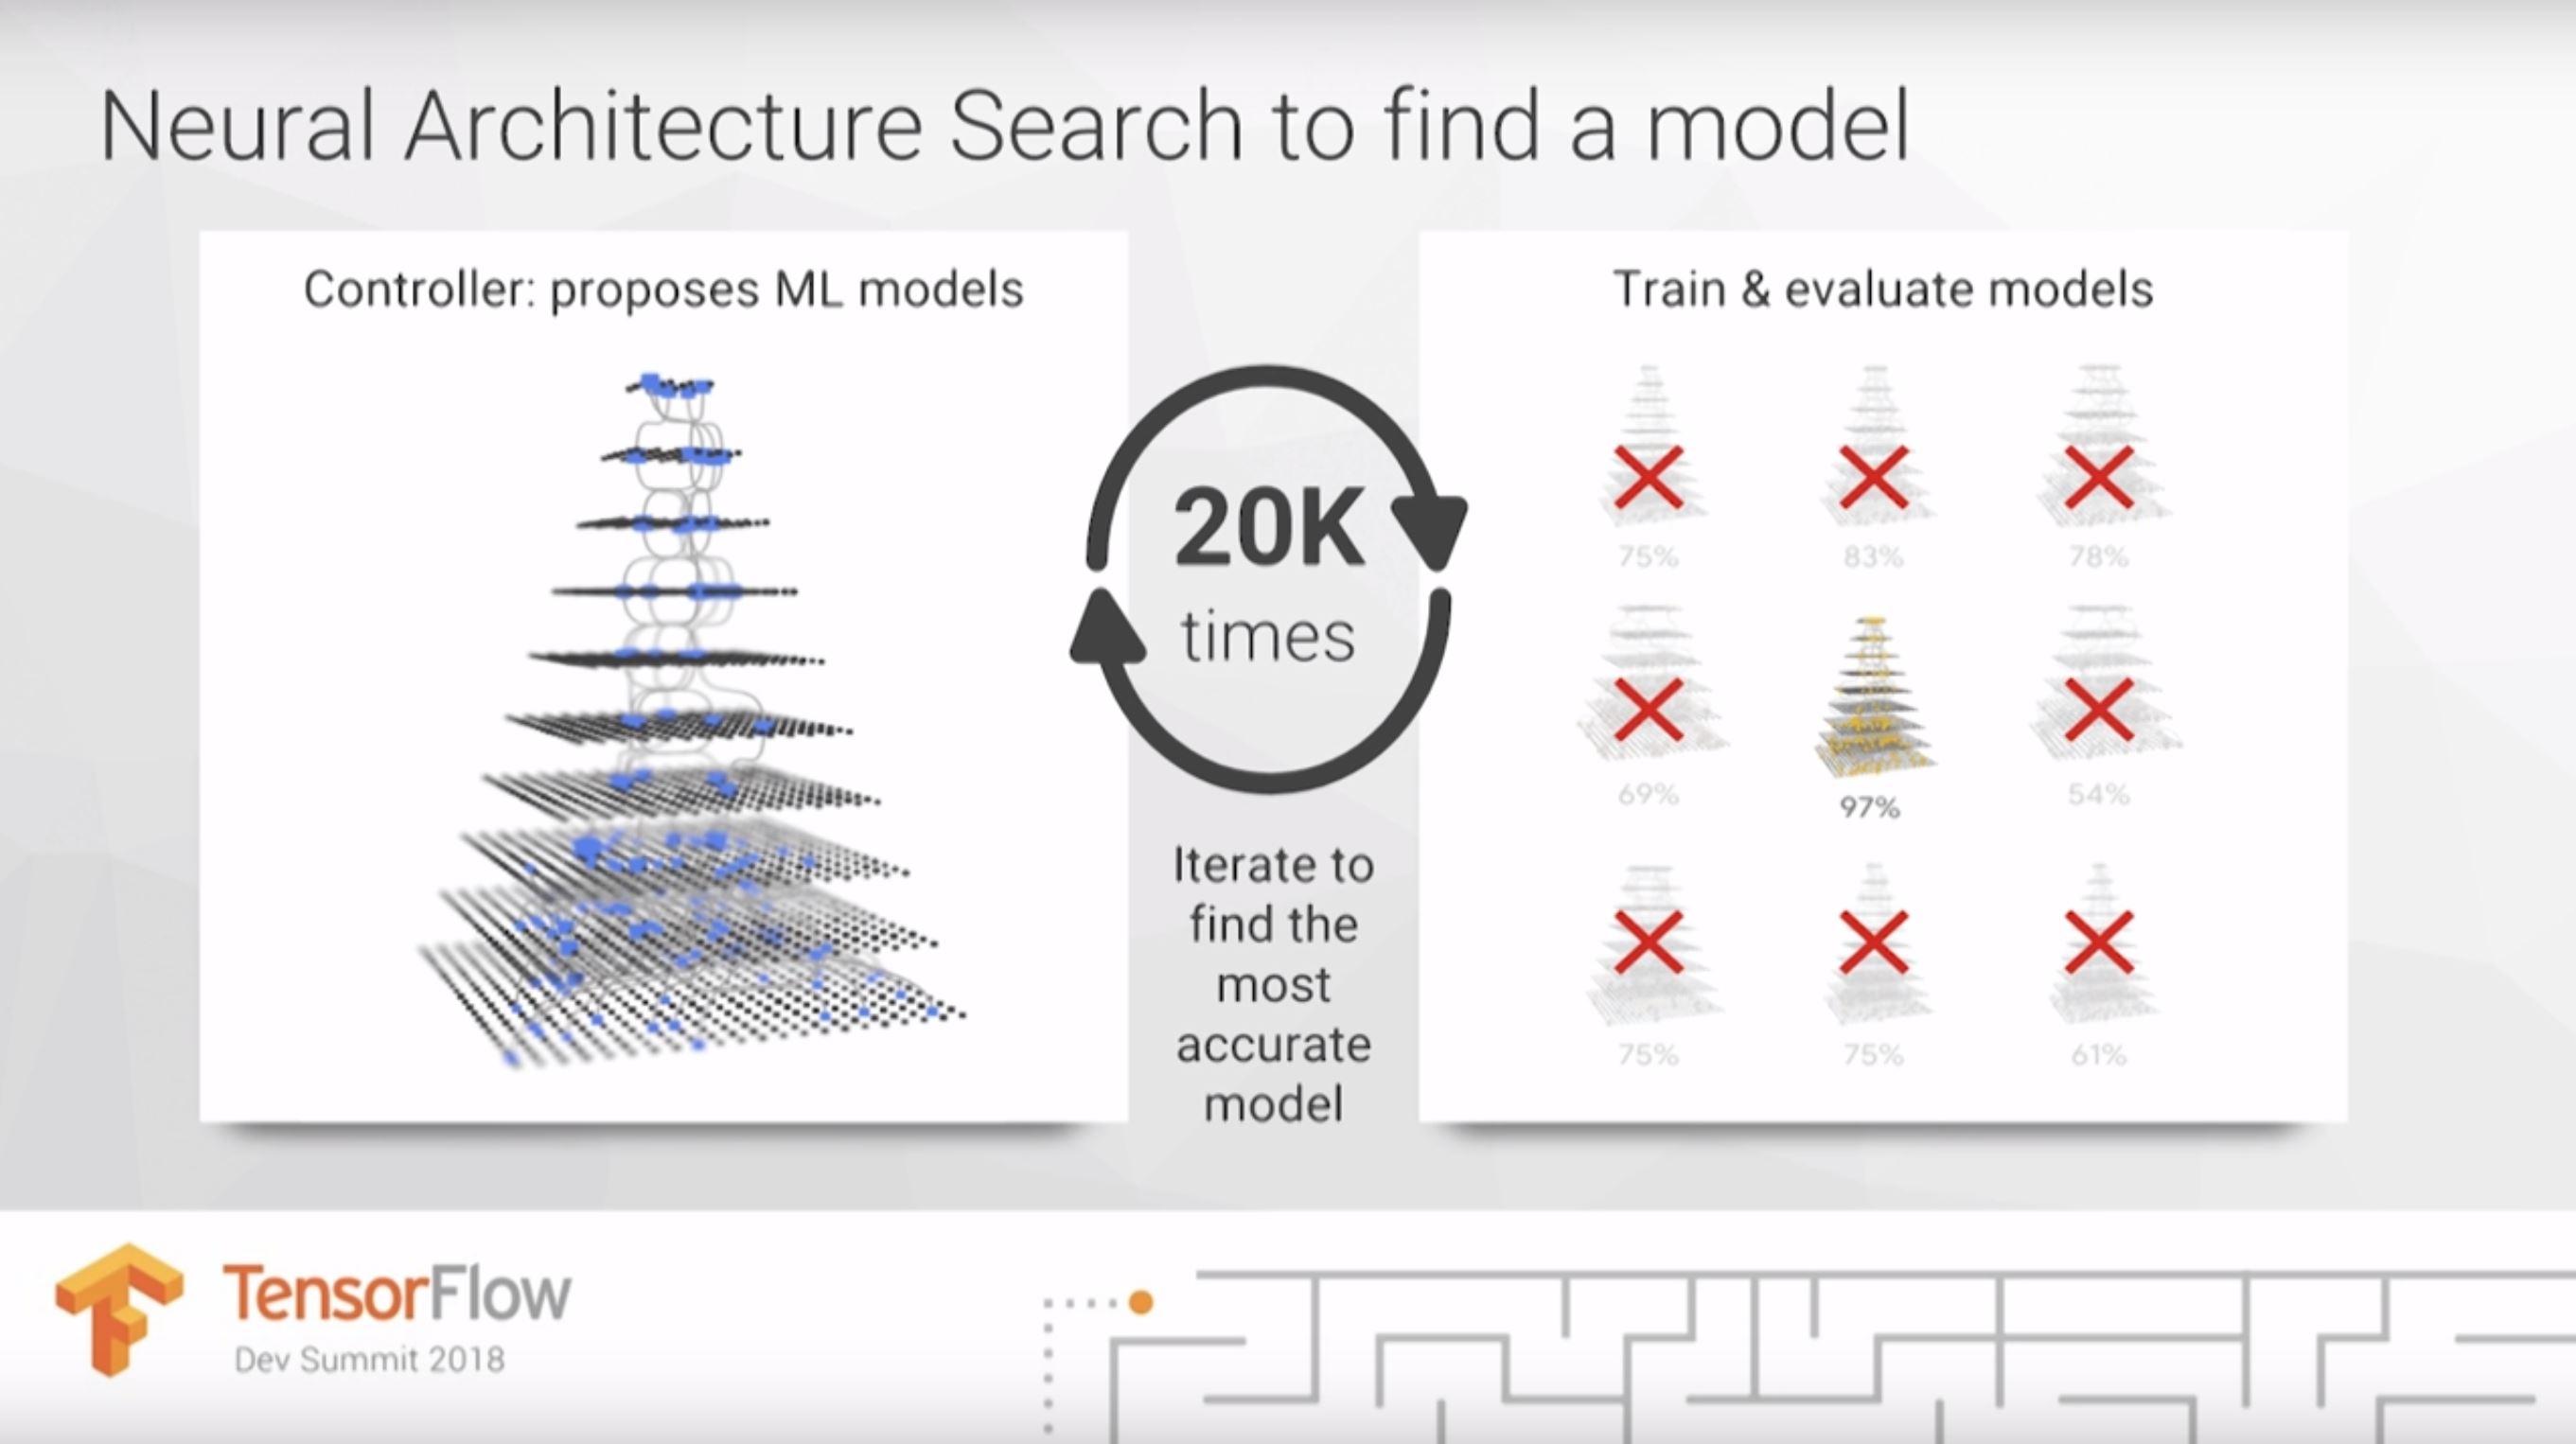 Jeff Dean的幻灯片显示，神经架构搜索可以尝试20种不同的模型来找到最准确的